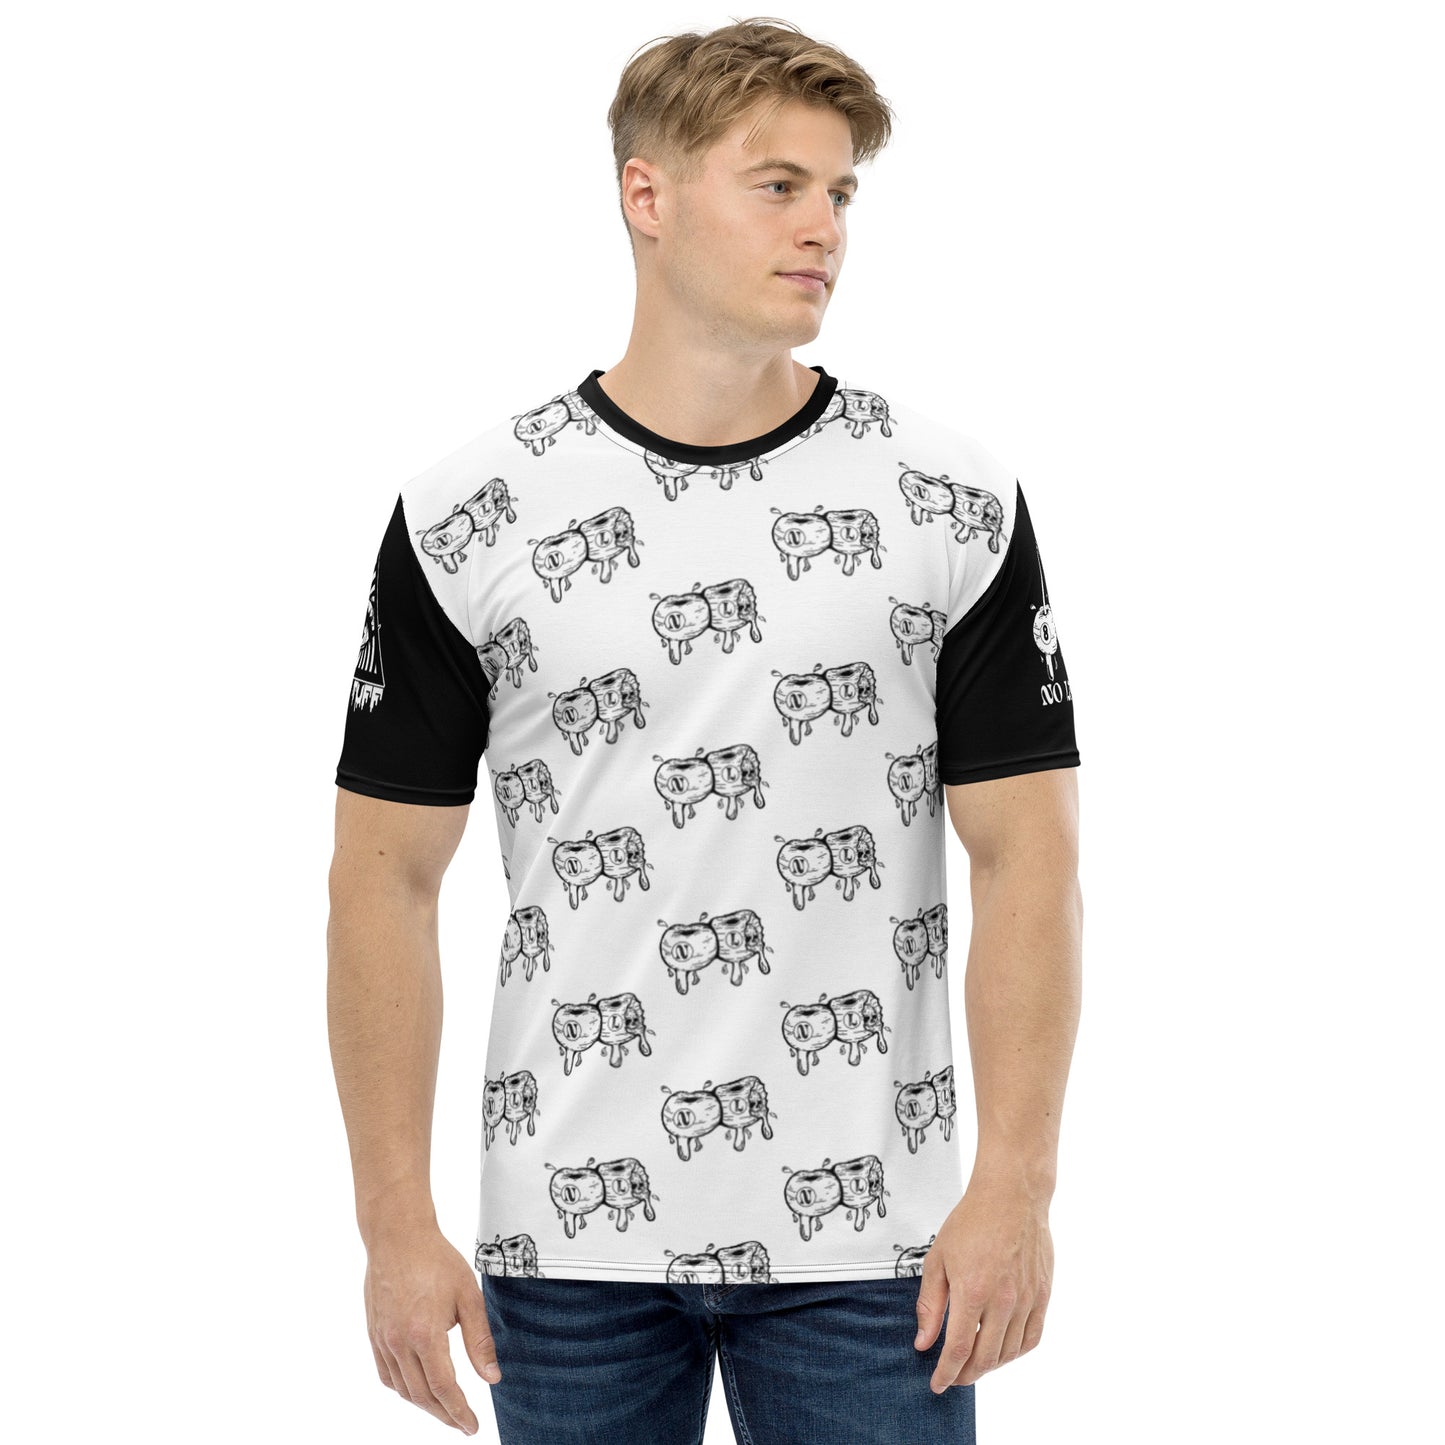 NO LUCK '8 BALL' (Men's All Over Print T-Shirt)